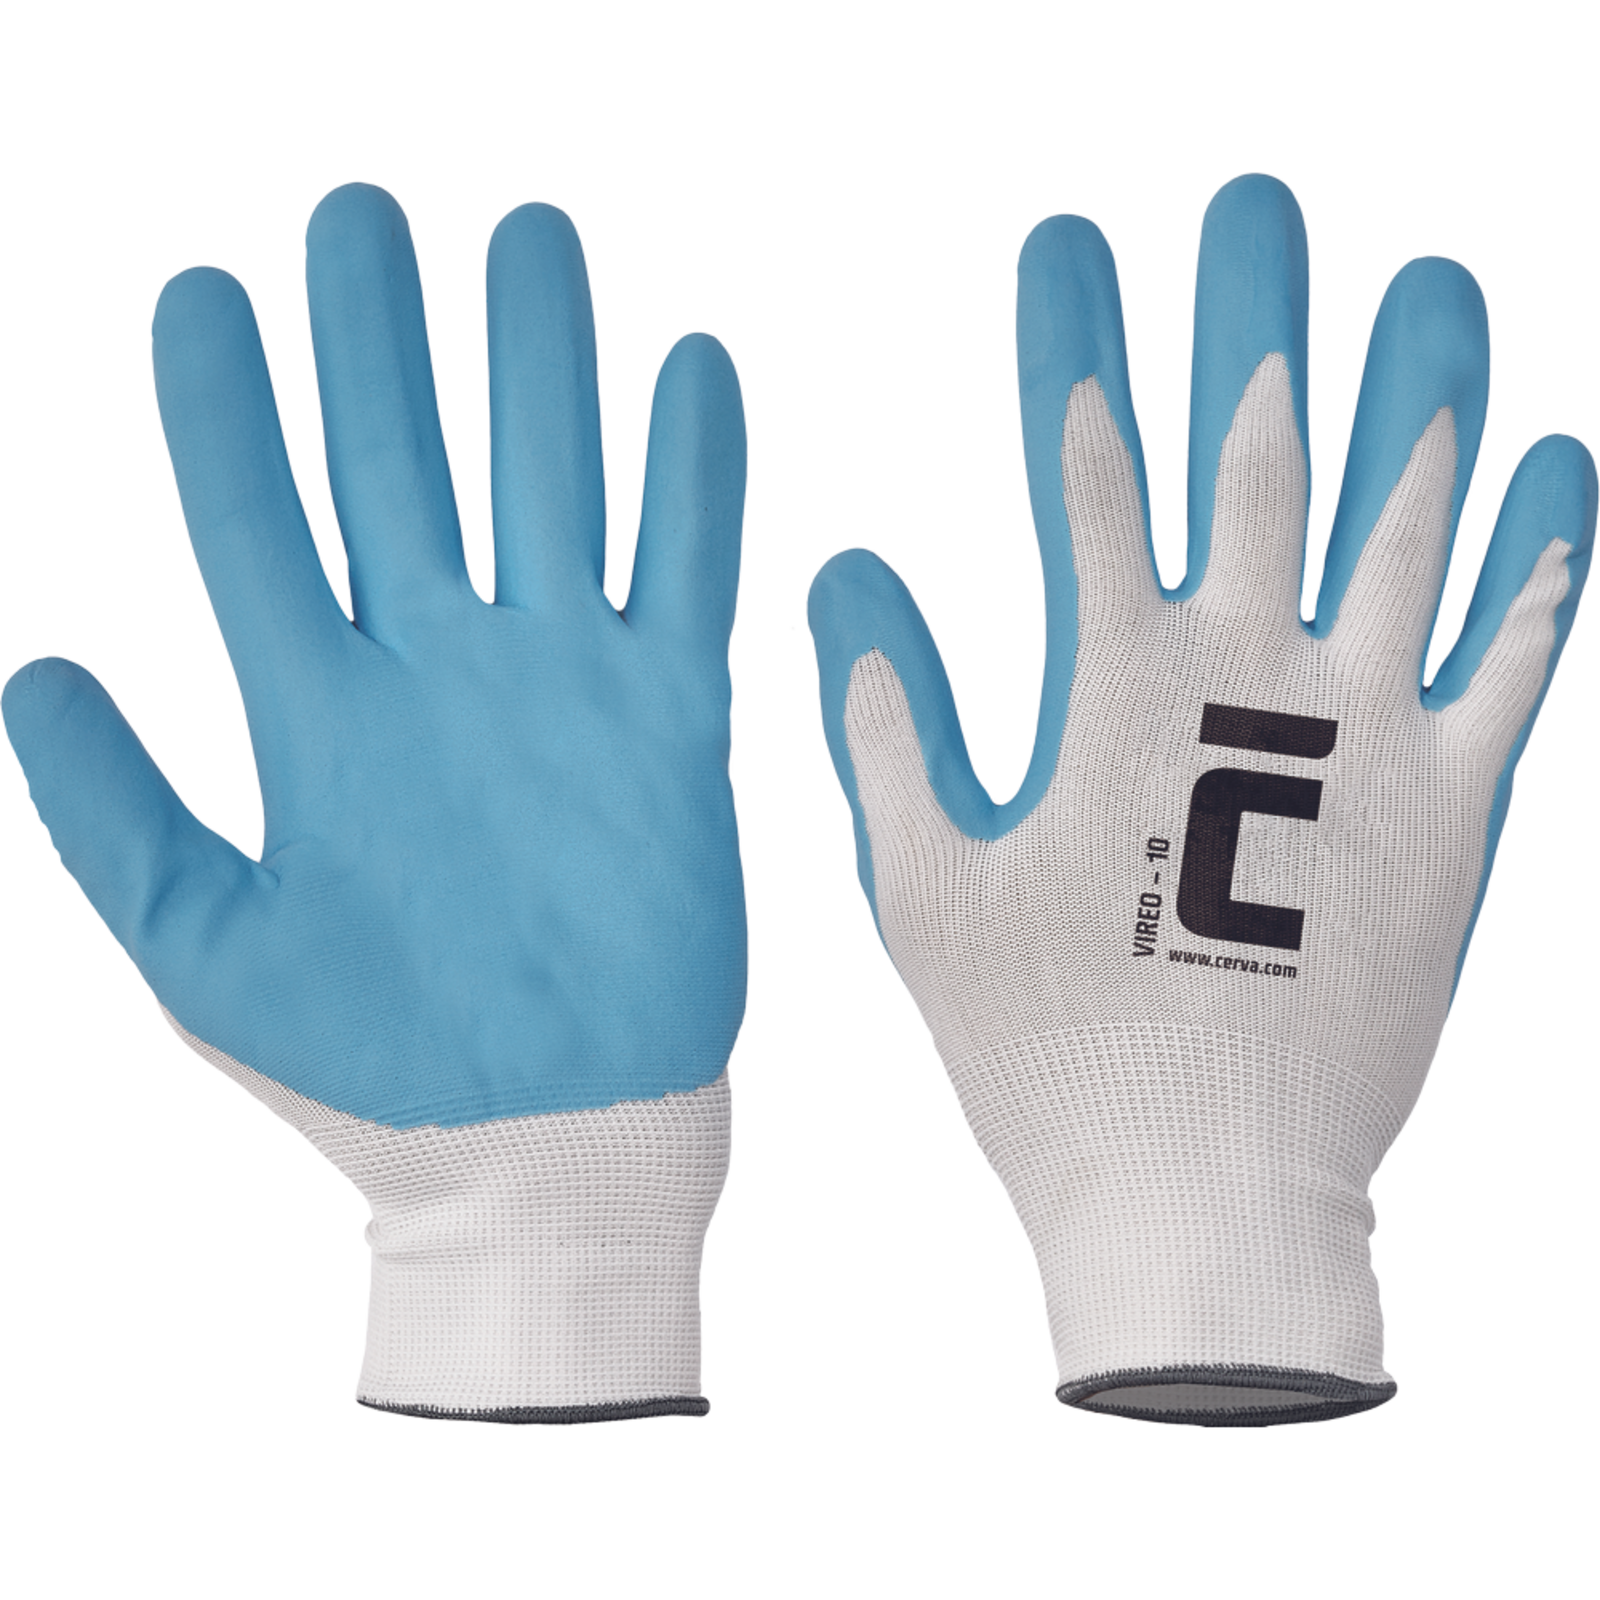 Pracovné rukavice Cerva Vireo, mechanické - univerzálne, máčané nitril - veľkosť: 8/M, farba: biela/modrá